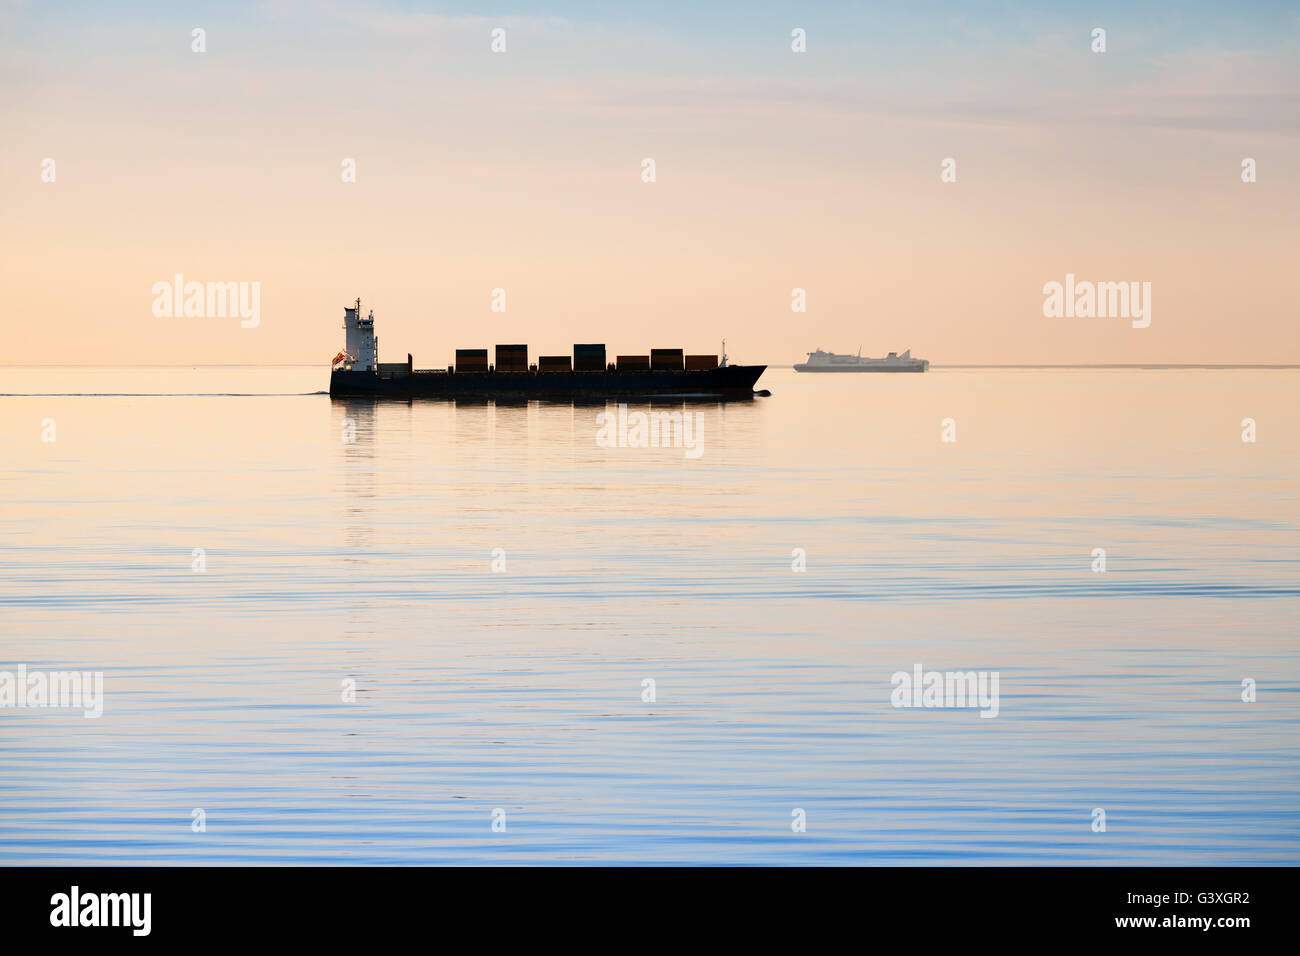 Große industrielle Containerschiff geht noch Meerwasser im Abend, Silhouette Foto, natürlichen Gegenlicht Effekt Stockfoto